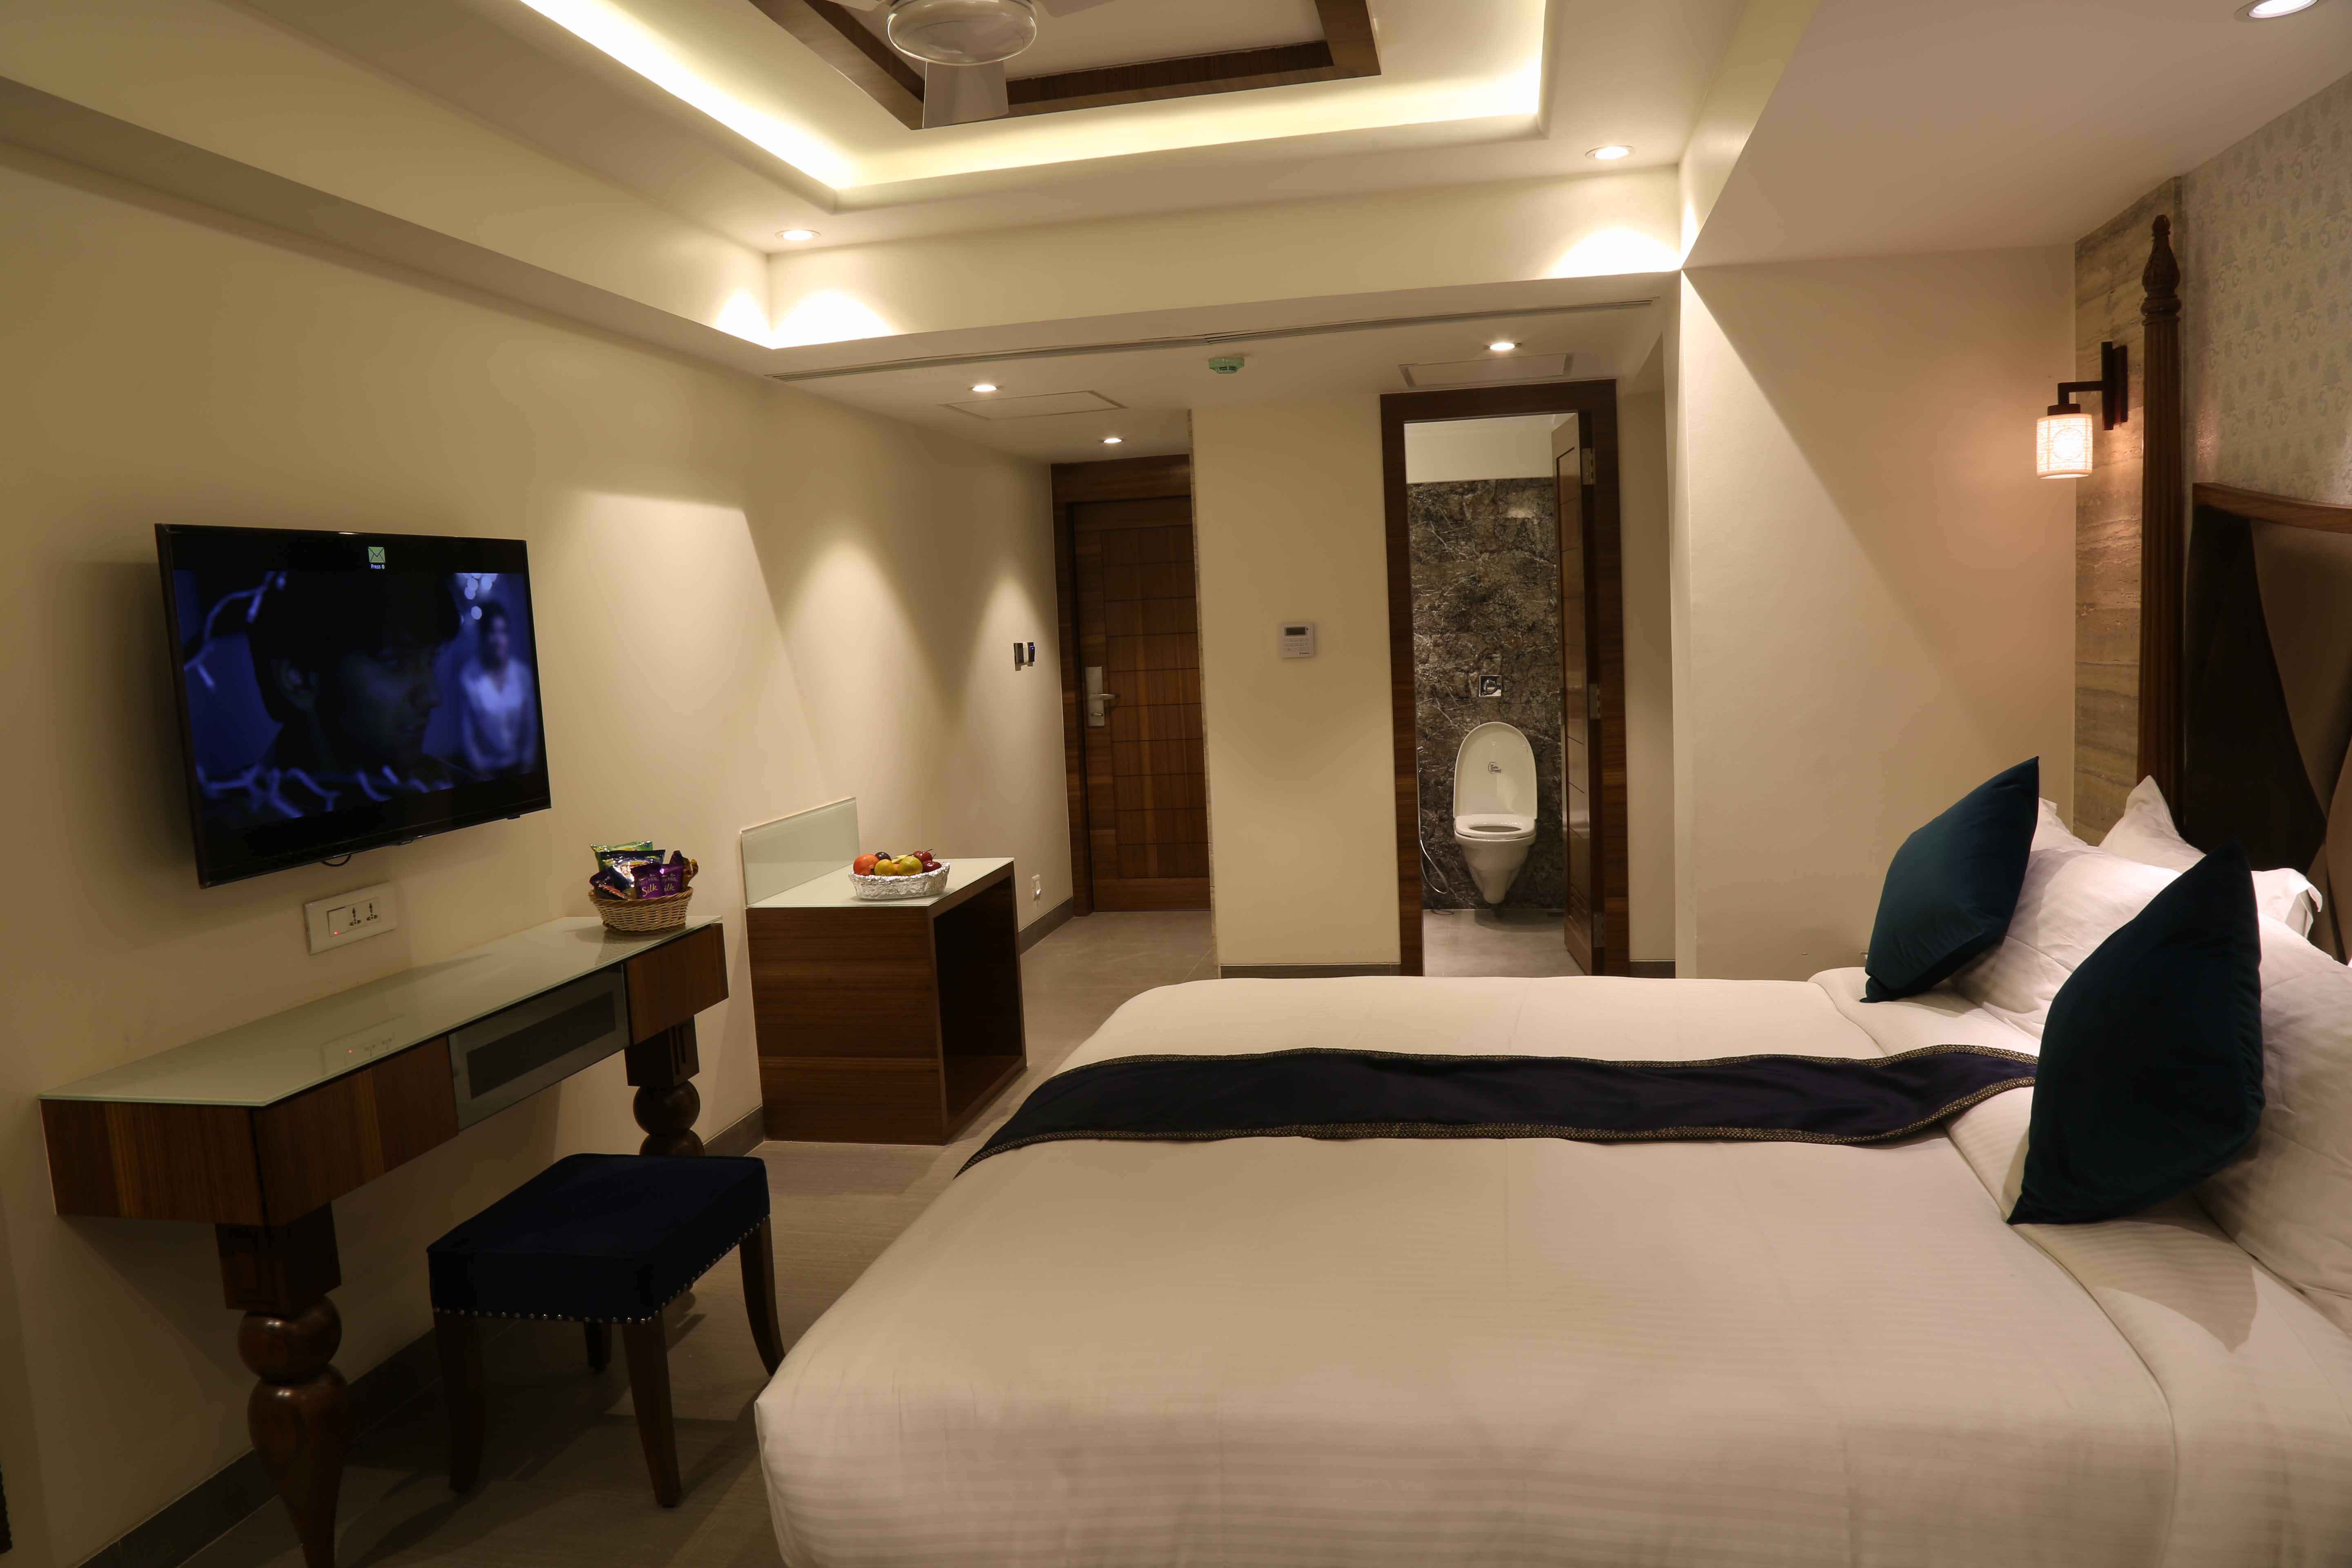 Budget Hotel in Goa